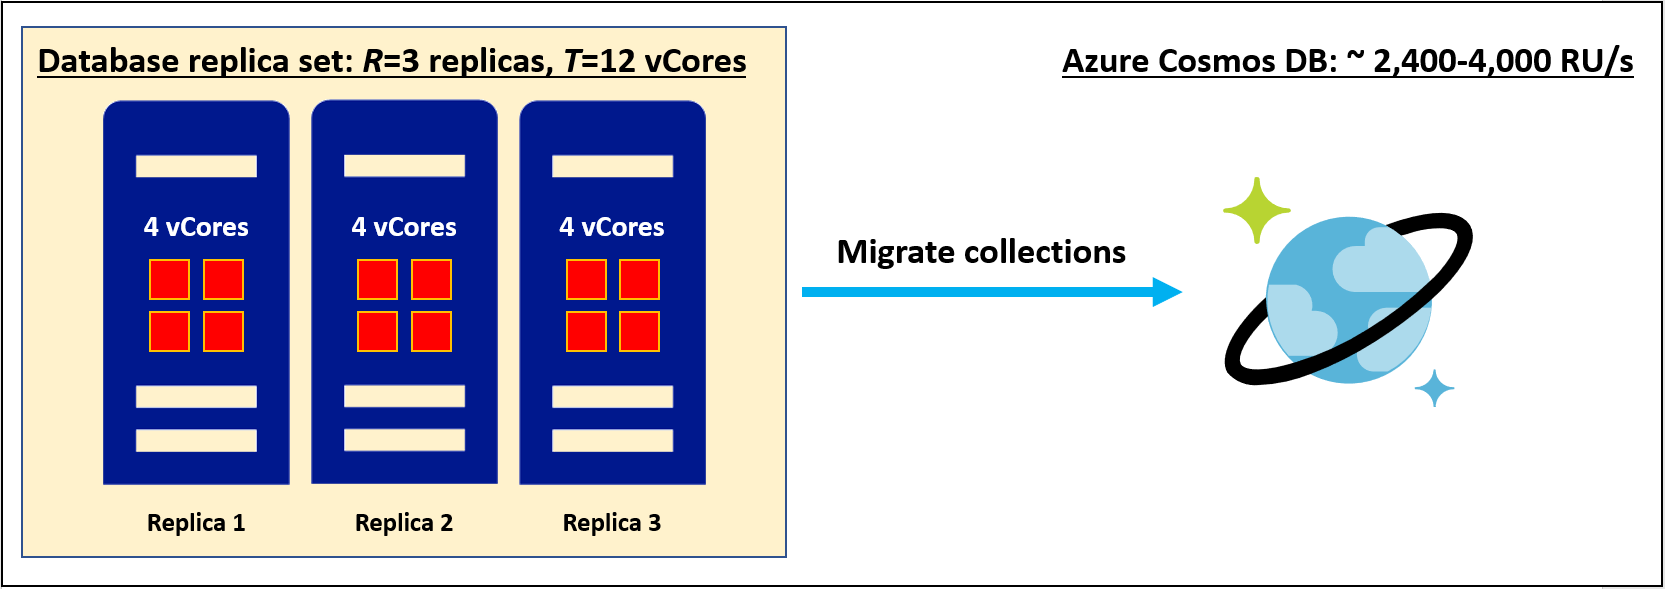 Négymagos termékváltozat 3 replikáját tartalmazó replikakészlet migrálása az Azure Cosmos DB-be